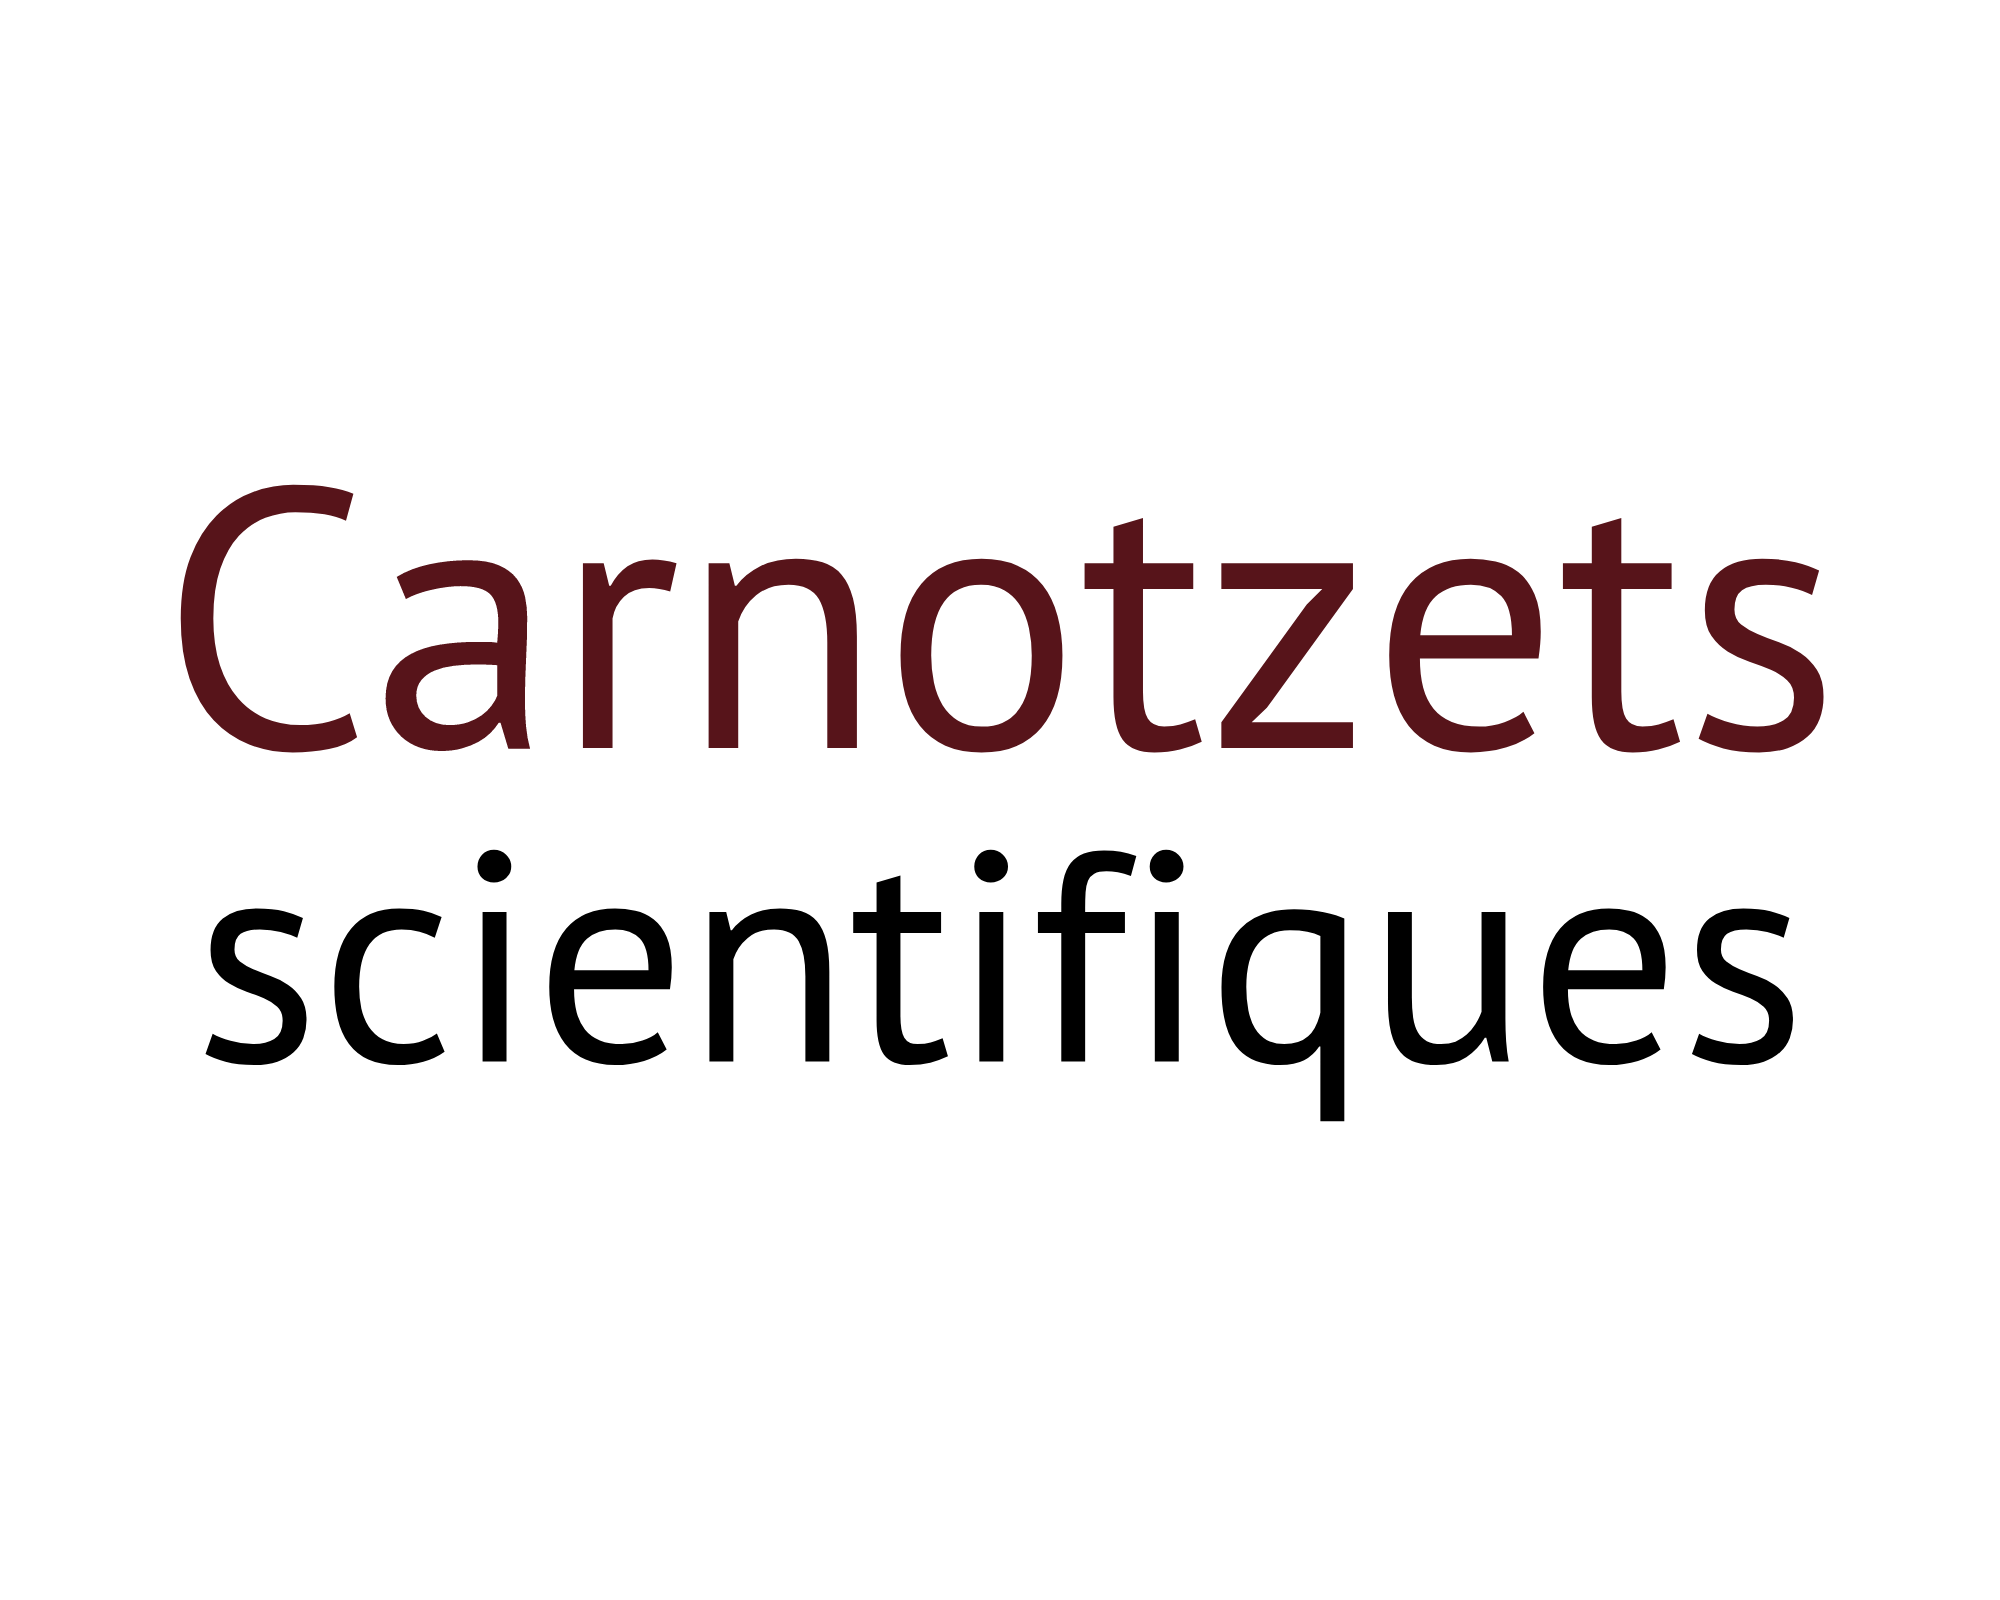 Carnotzets scientifiques(5).png